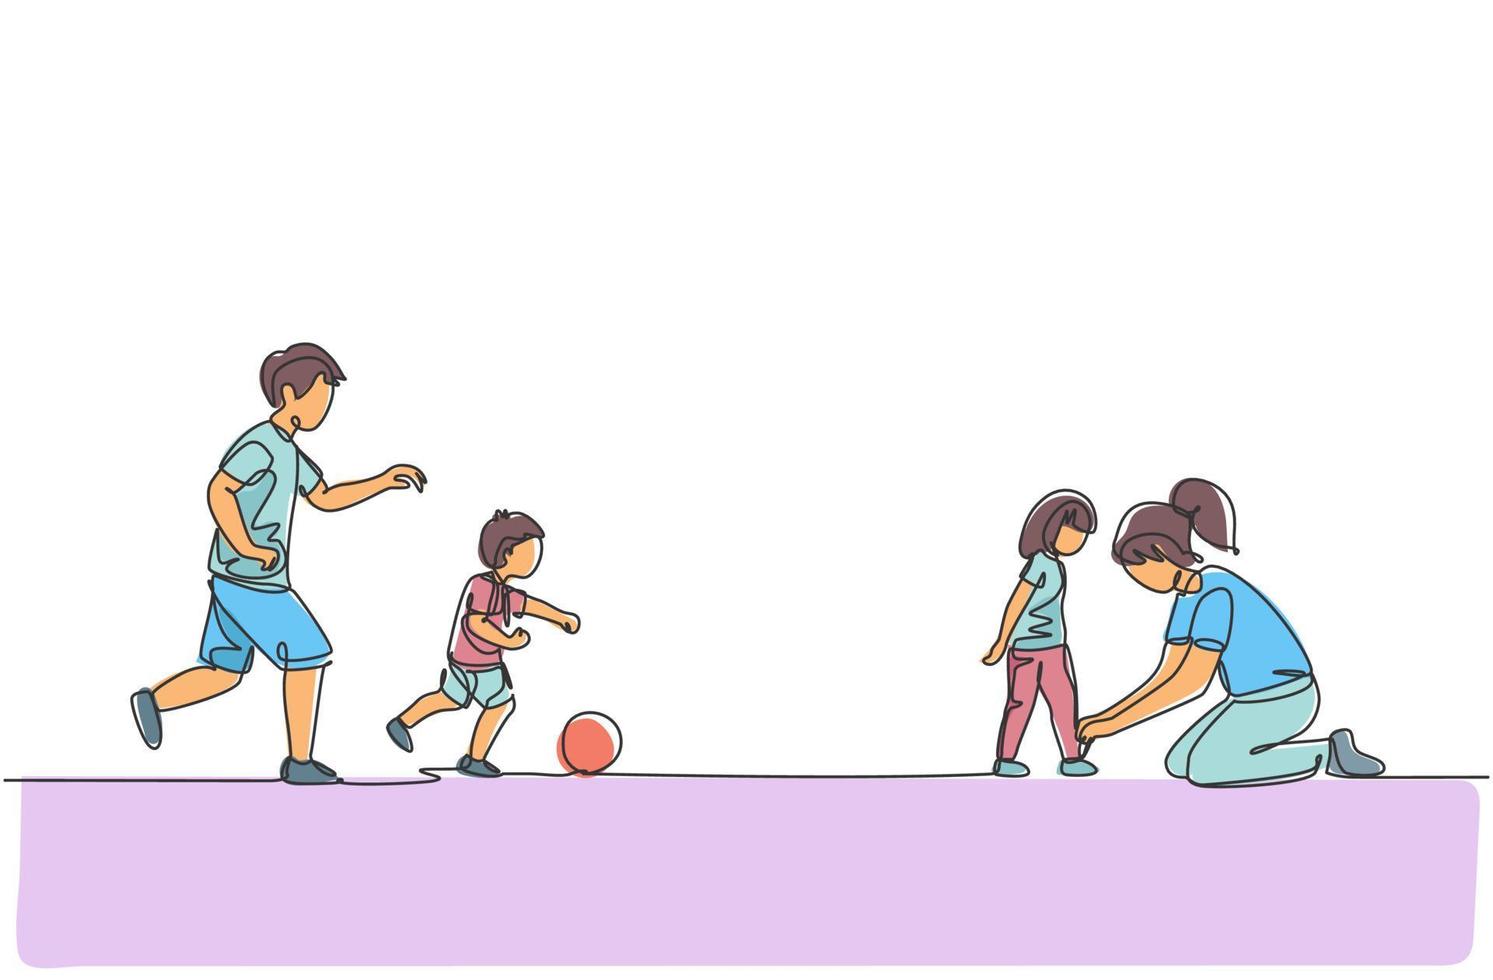 en kontinuerlig ritning av unga som spelar fotboll med sonen på fältet medan mamma knyter dotterns skosnören. lycklig familj föräldraskap koncept. dynamisk enkel linje rita design vektor illustration